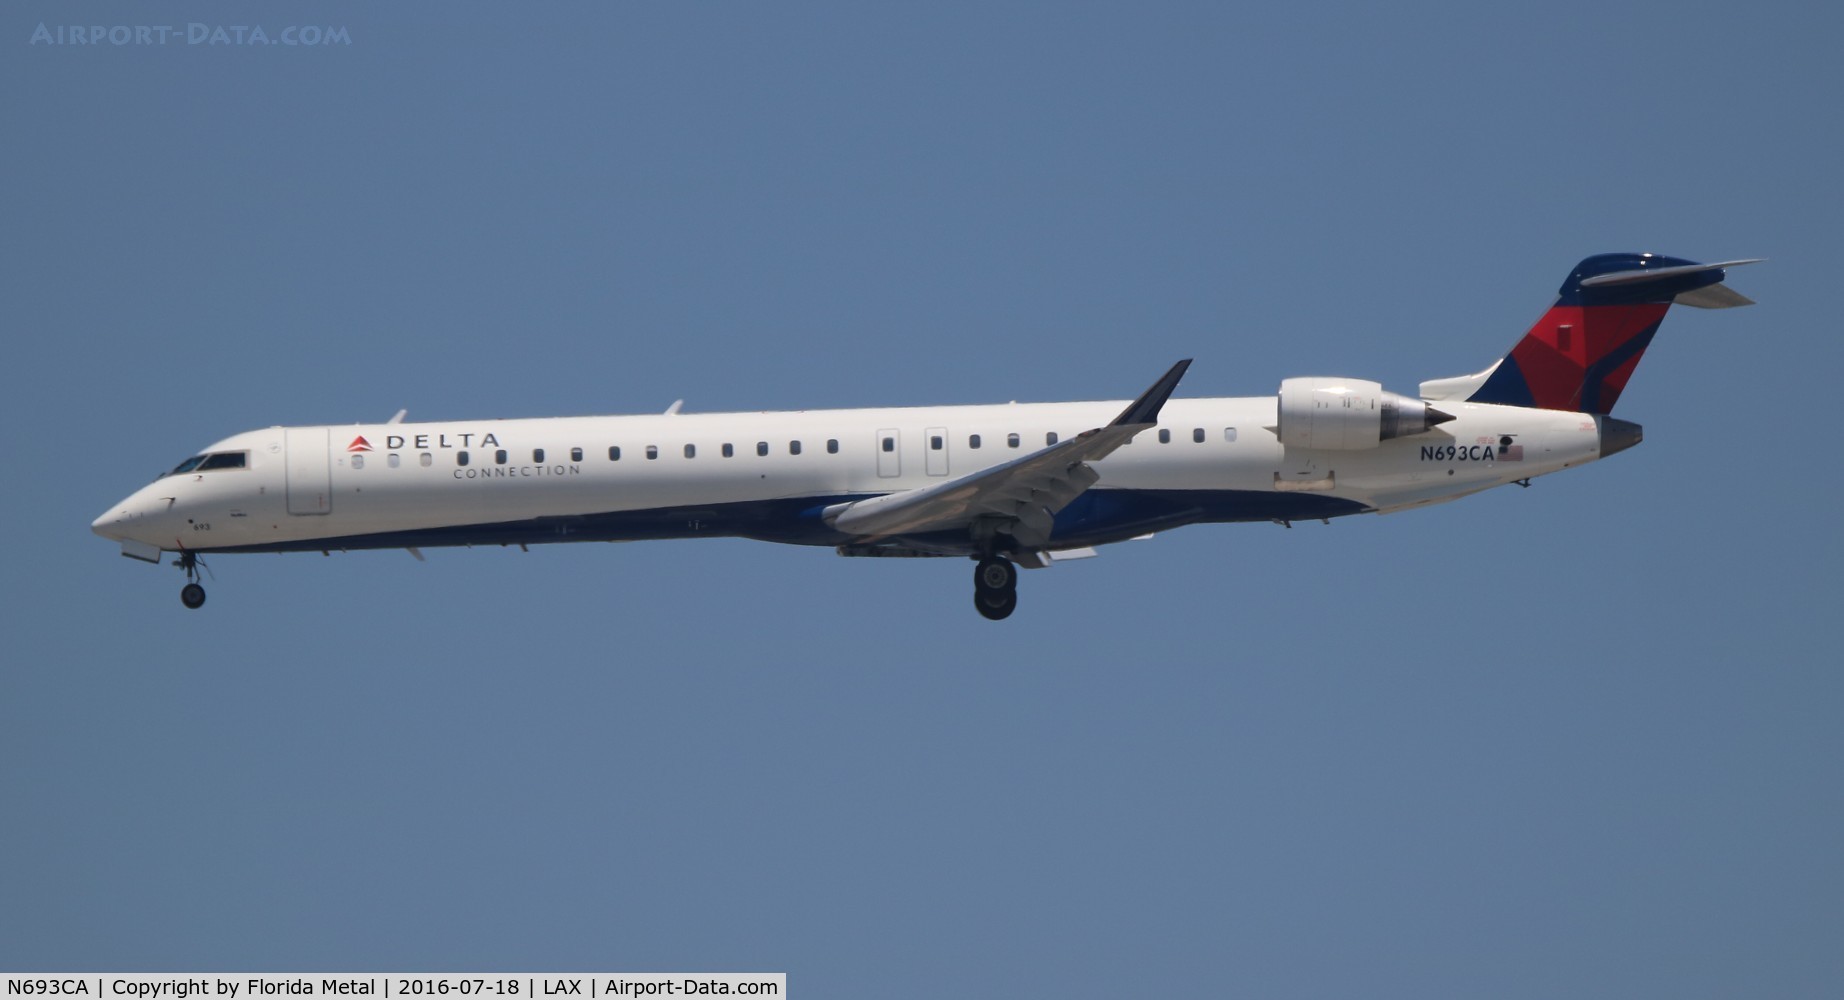 N693CA, 2006 Bombardier CRJ-900ER (CL-600-2D24) C/N 15096, Delta Connection